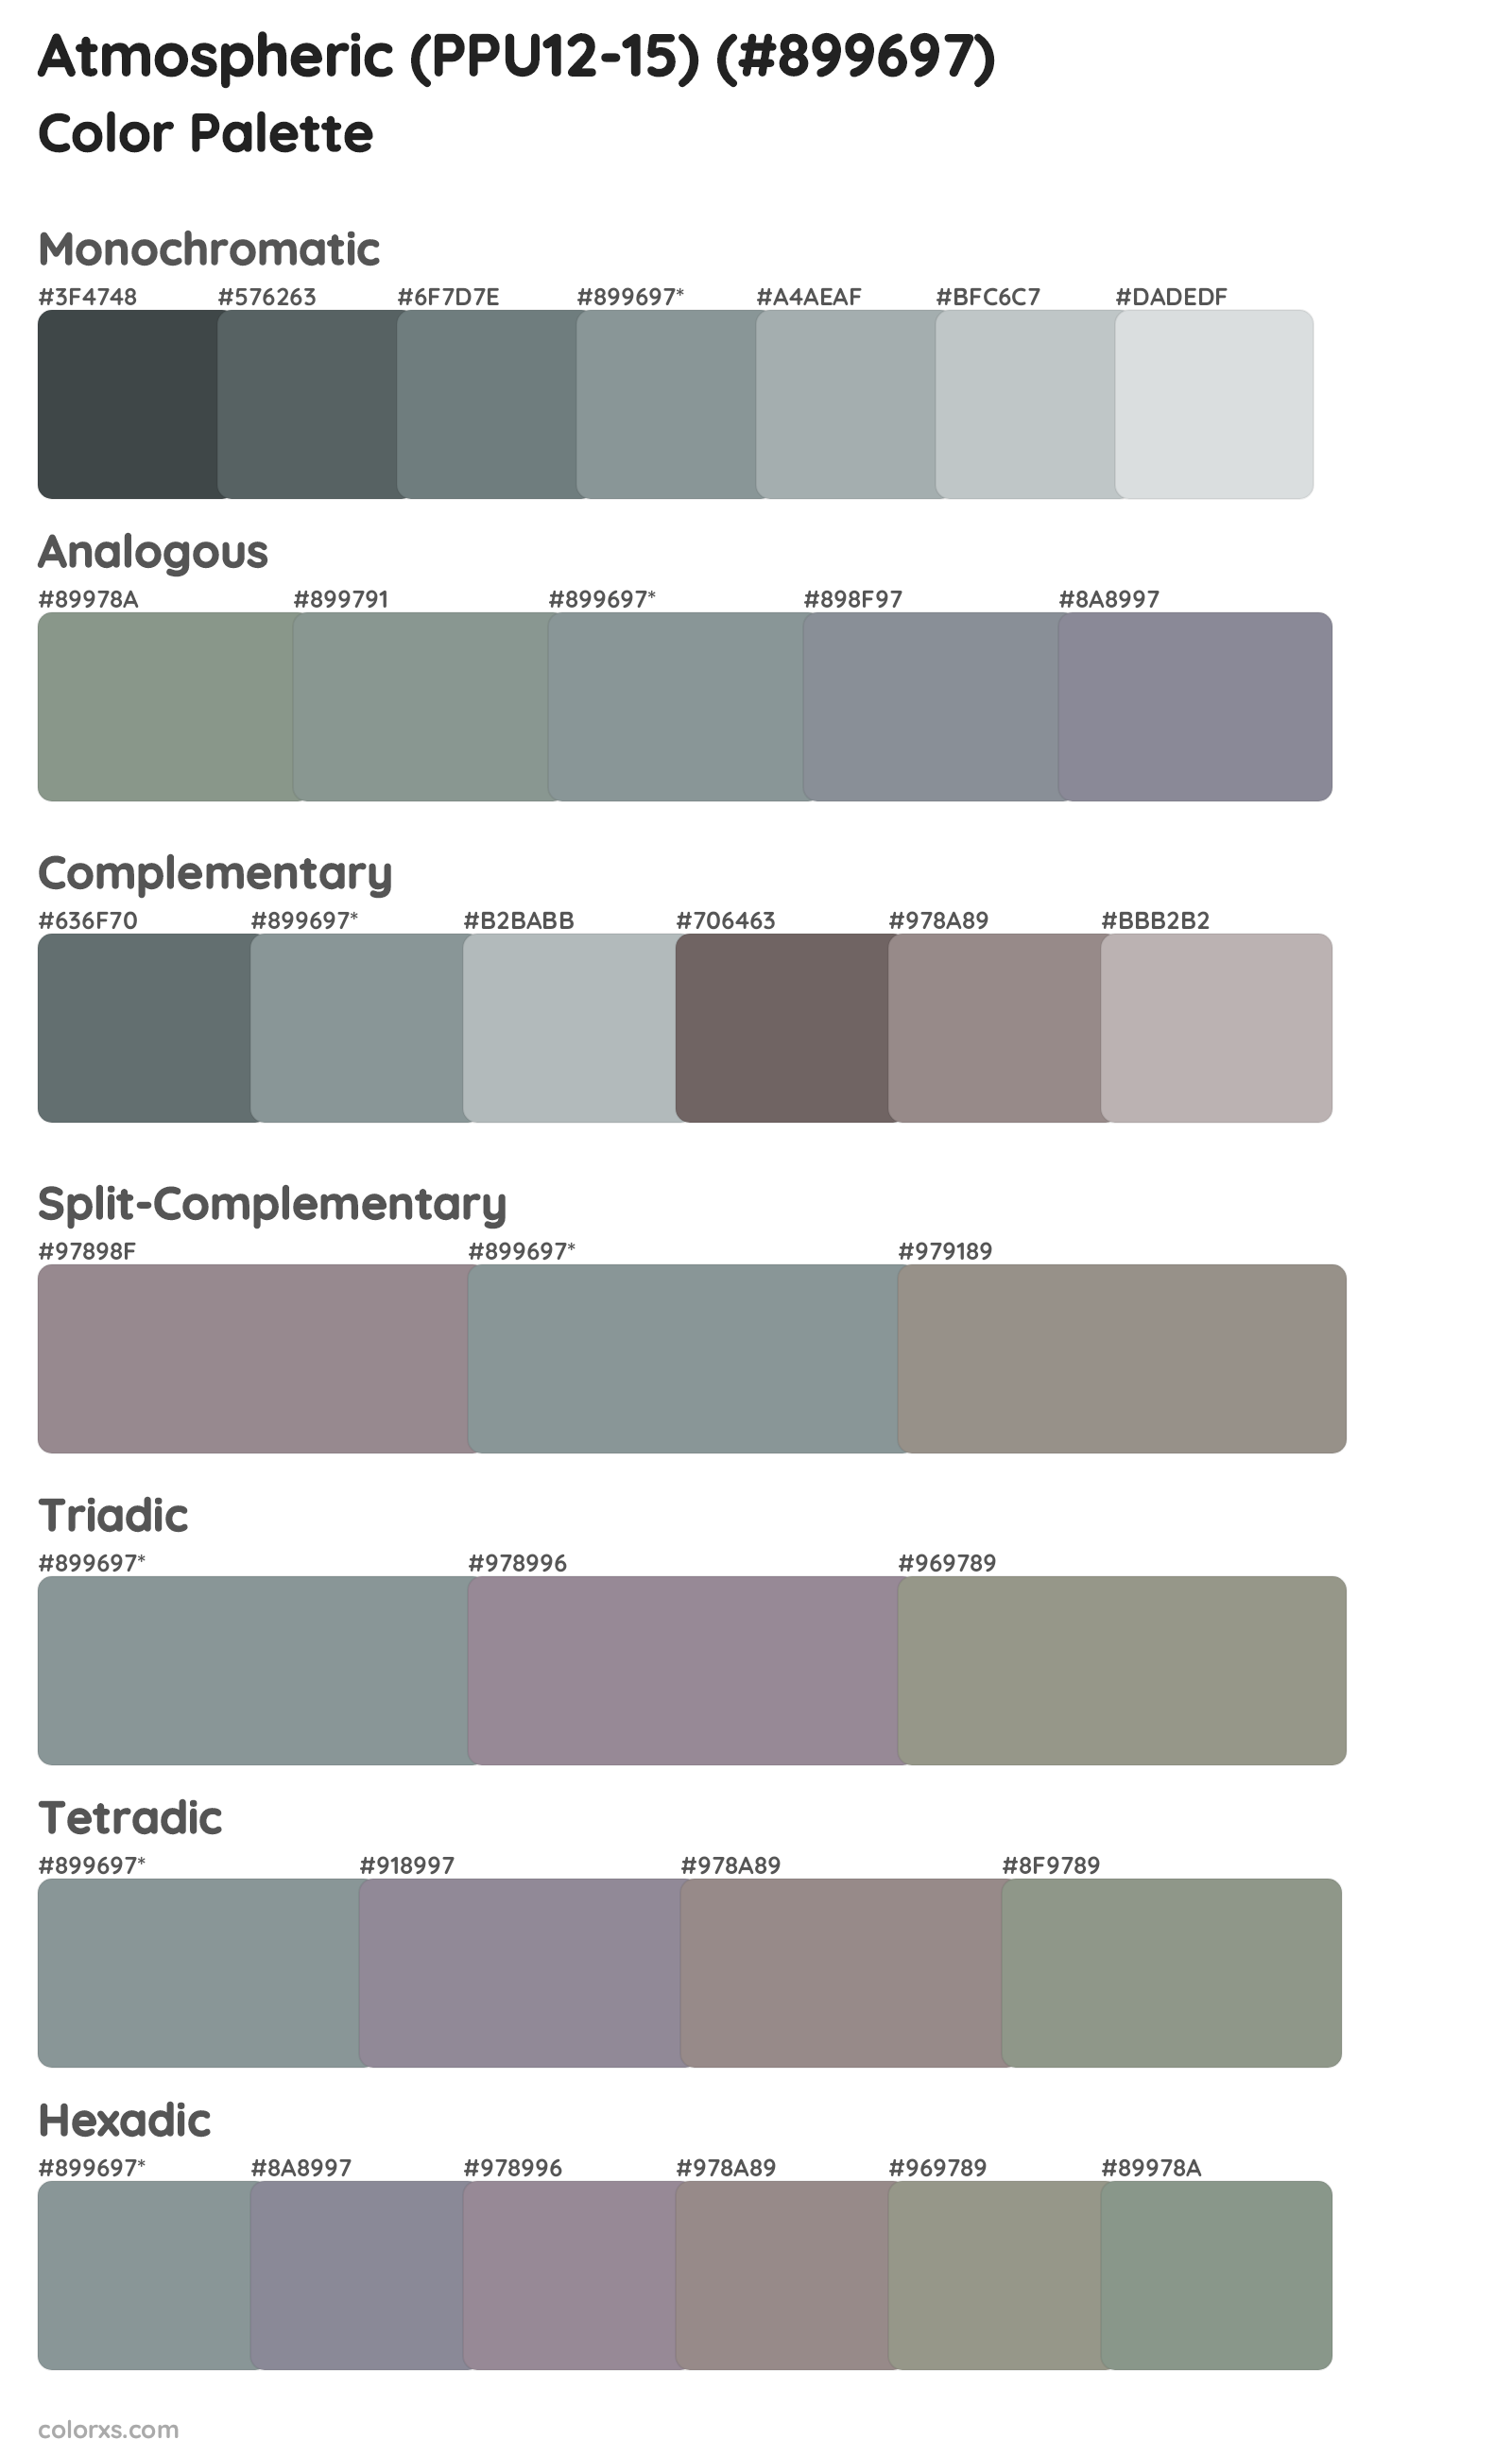 Atmospheric (PPU12-15) Color Scheme Palettes